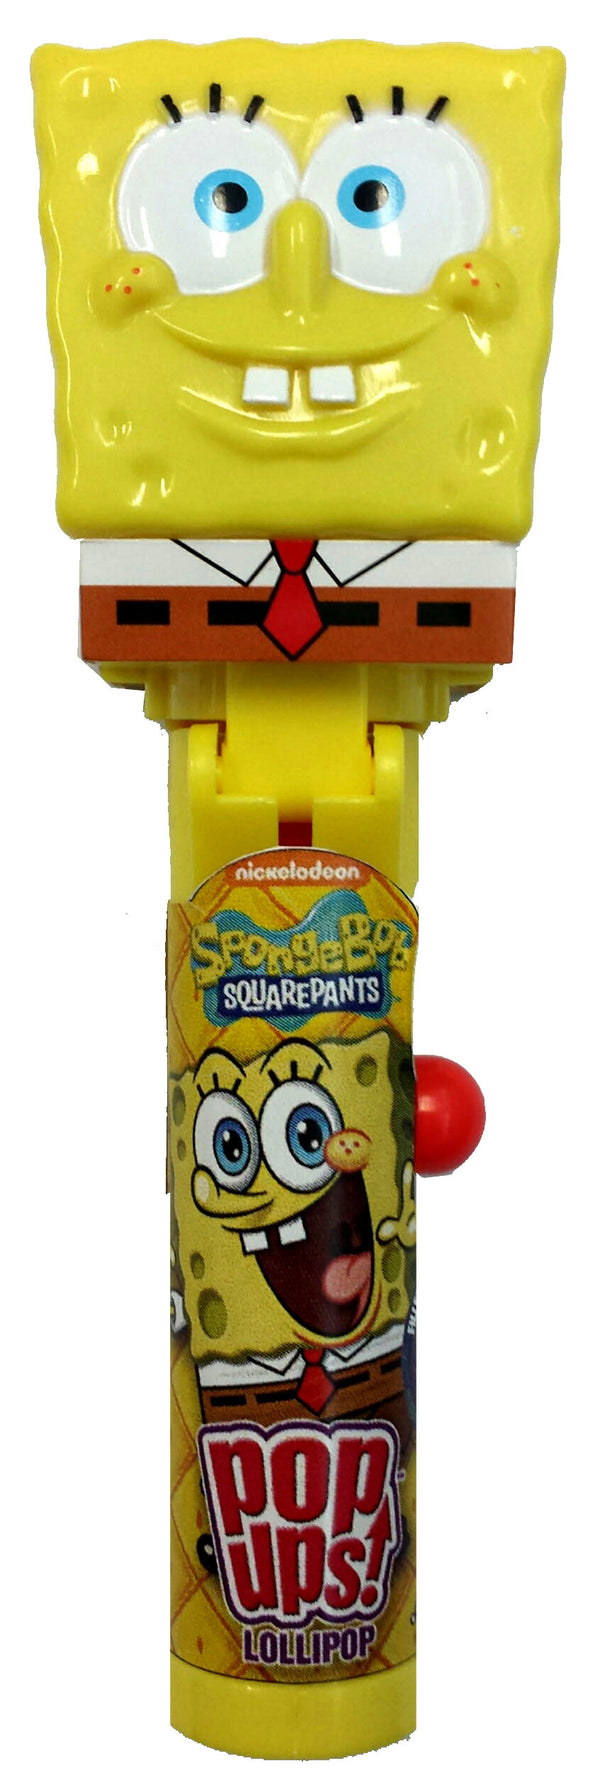  Nickelodeon Spongebob Squarepants Party Favors Pack